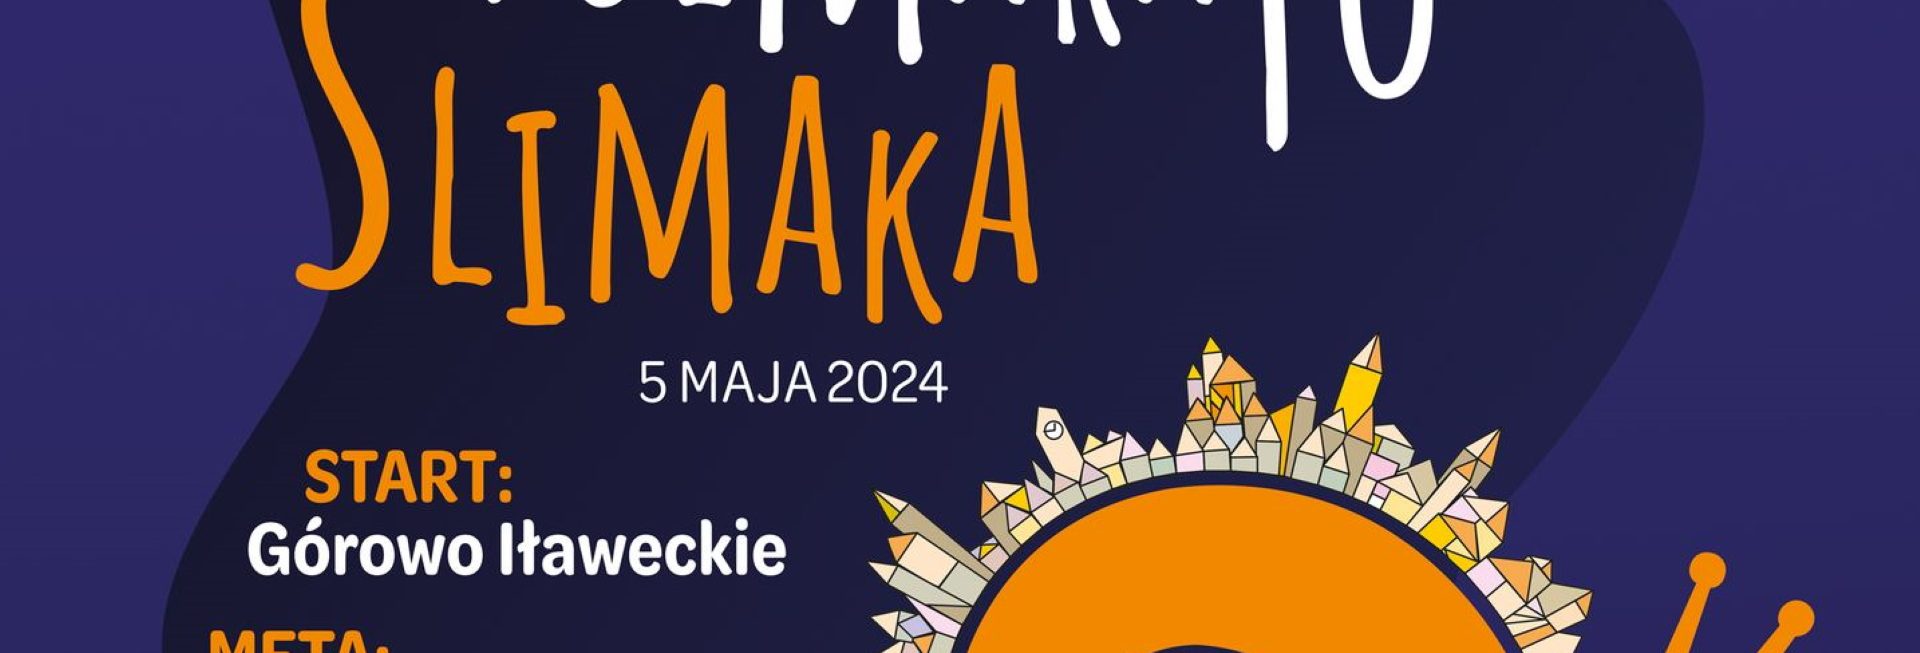 Plakat zapraszający w niedzielę 5 maja 2024 r. do Lidzbarka Warmińskiego na 3. edycję festiwalu biegowego – Półmaraton ŚLIMAKA Lidzbark Warmiński 2024.